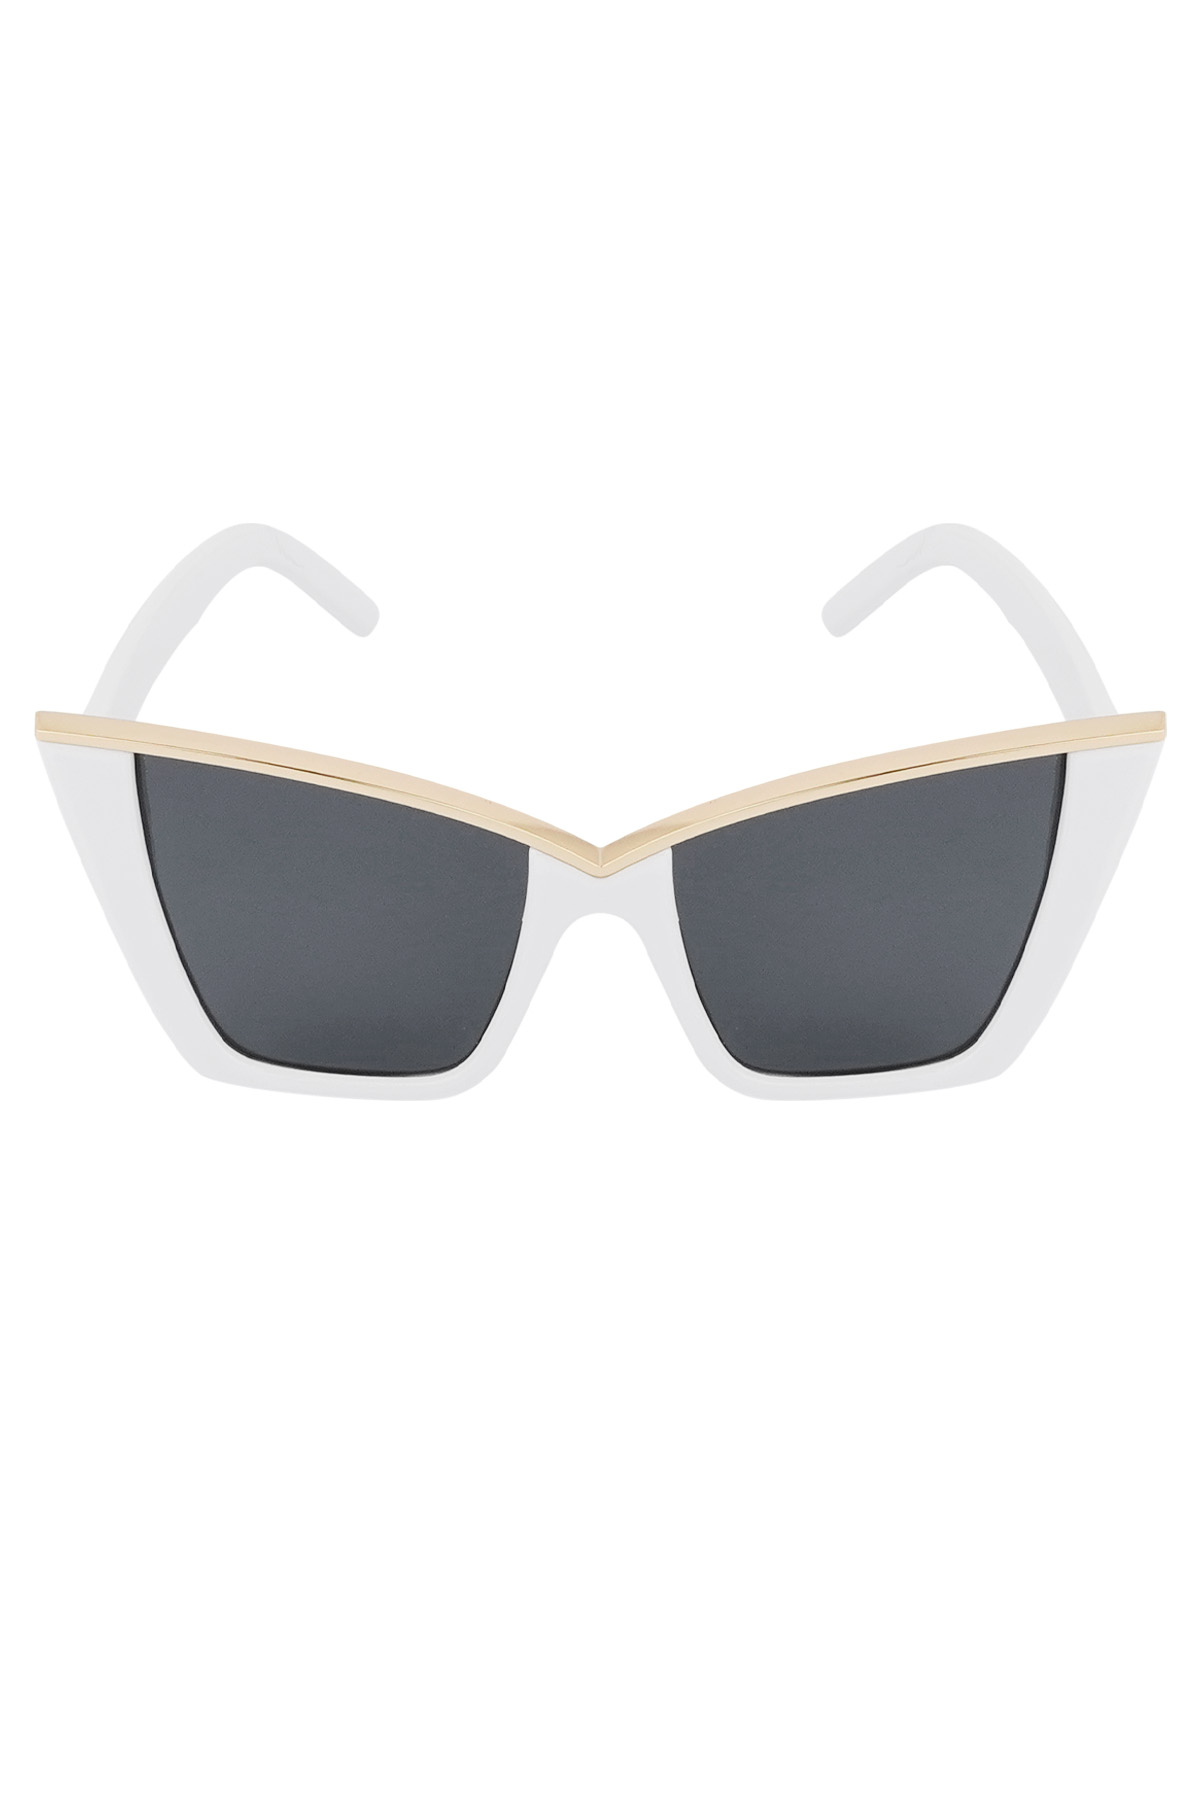 Chic sunglasses - white  Picture4